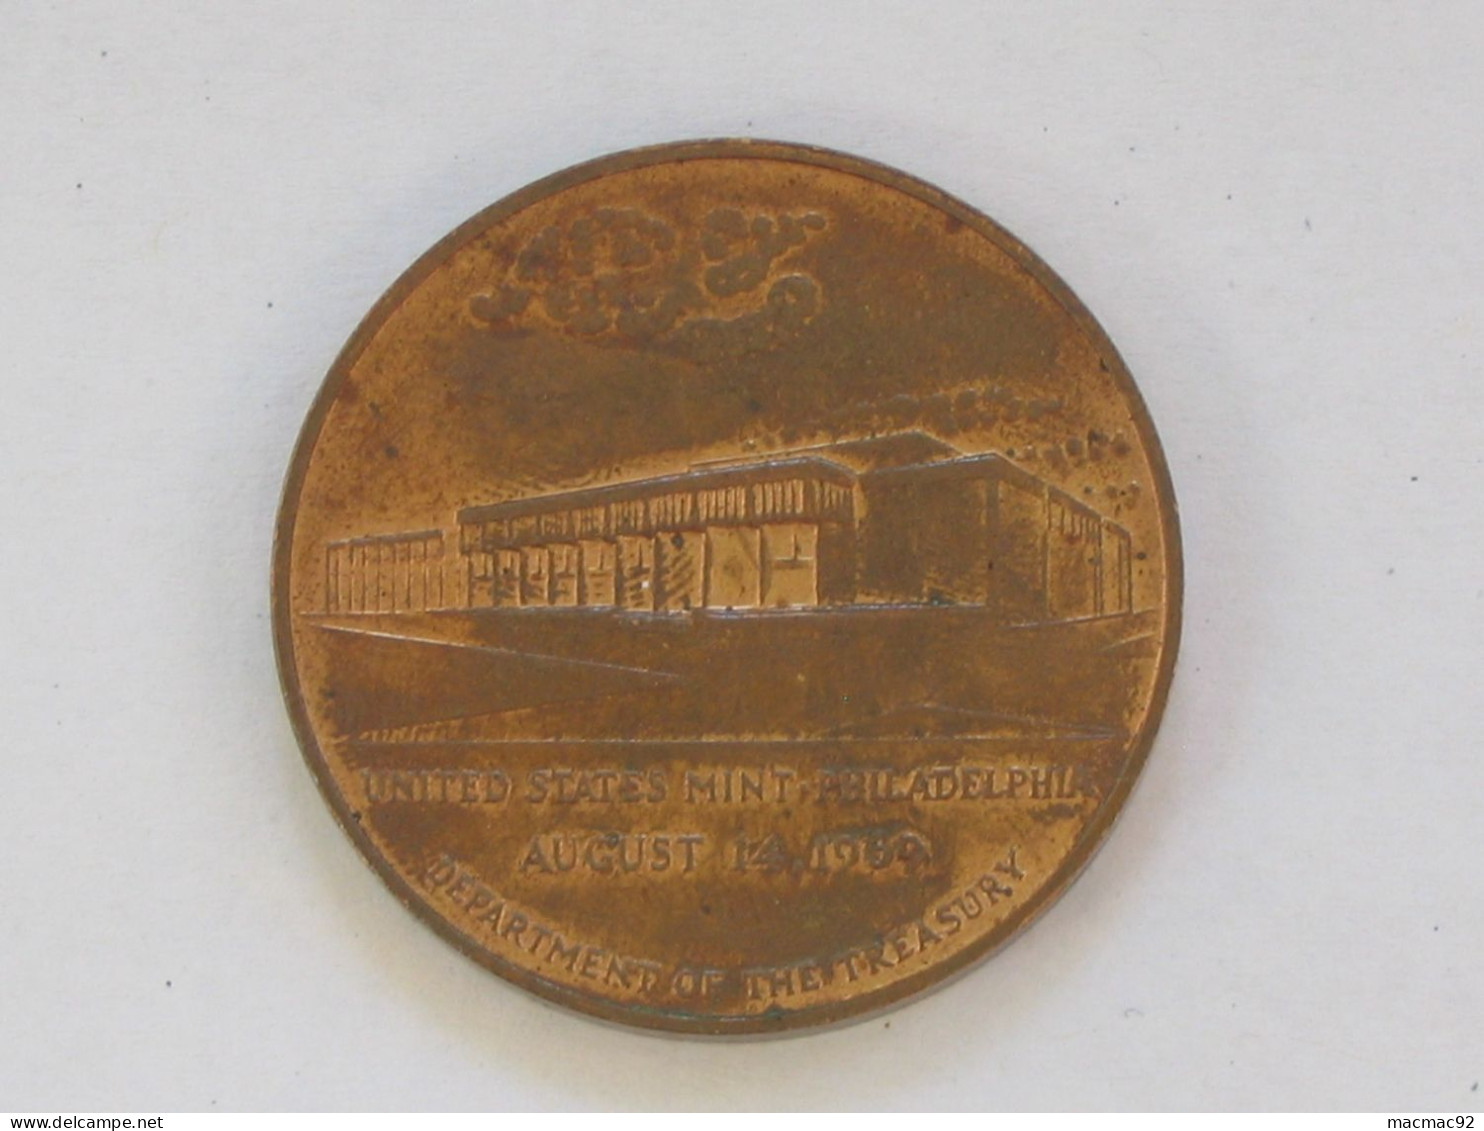 Médaille USA - UNITED STATES MINT - PHLILADELPHIA - August 14.1969  **** EN ACHAT IMMEDIAT **** - Professionnels/De Société